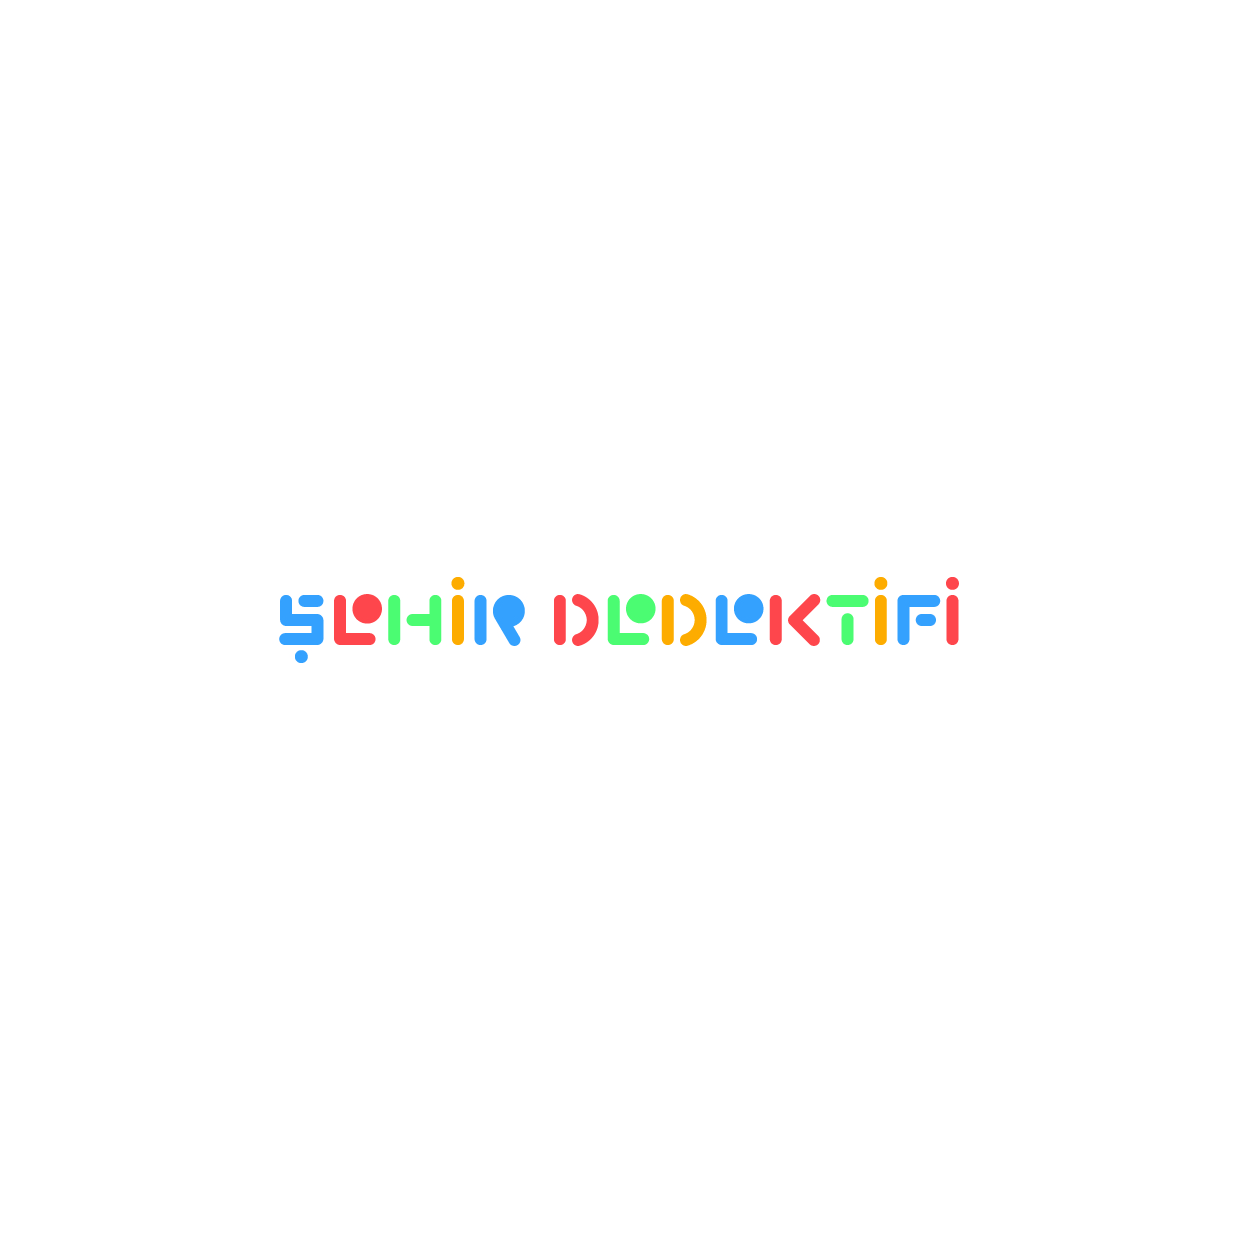 Sehir-Dedektifi-Logo1-forGMK (1)